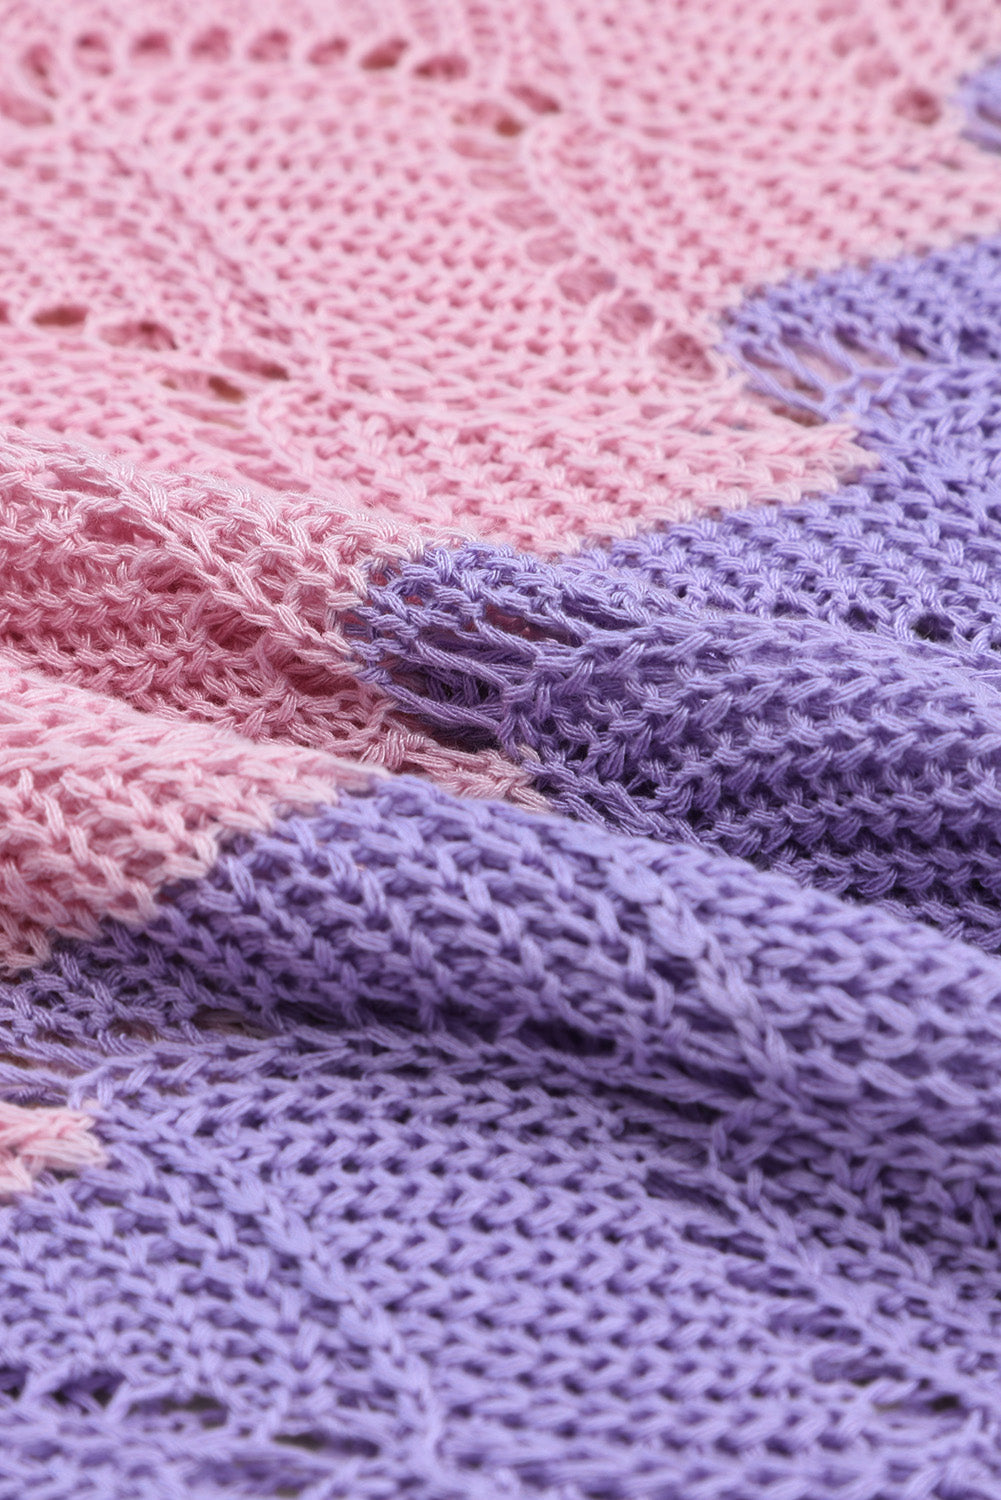 Pull ample tricoté creux à blocs de couleurs rose